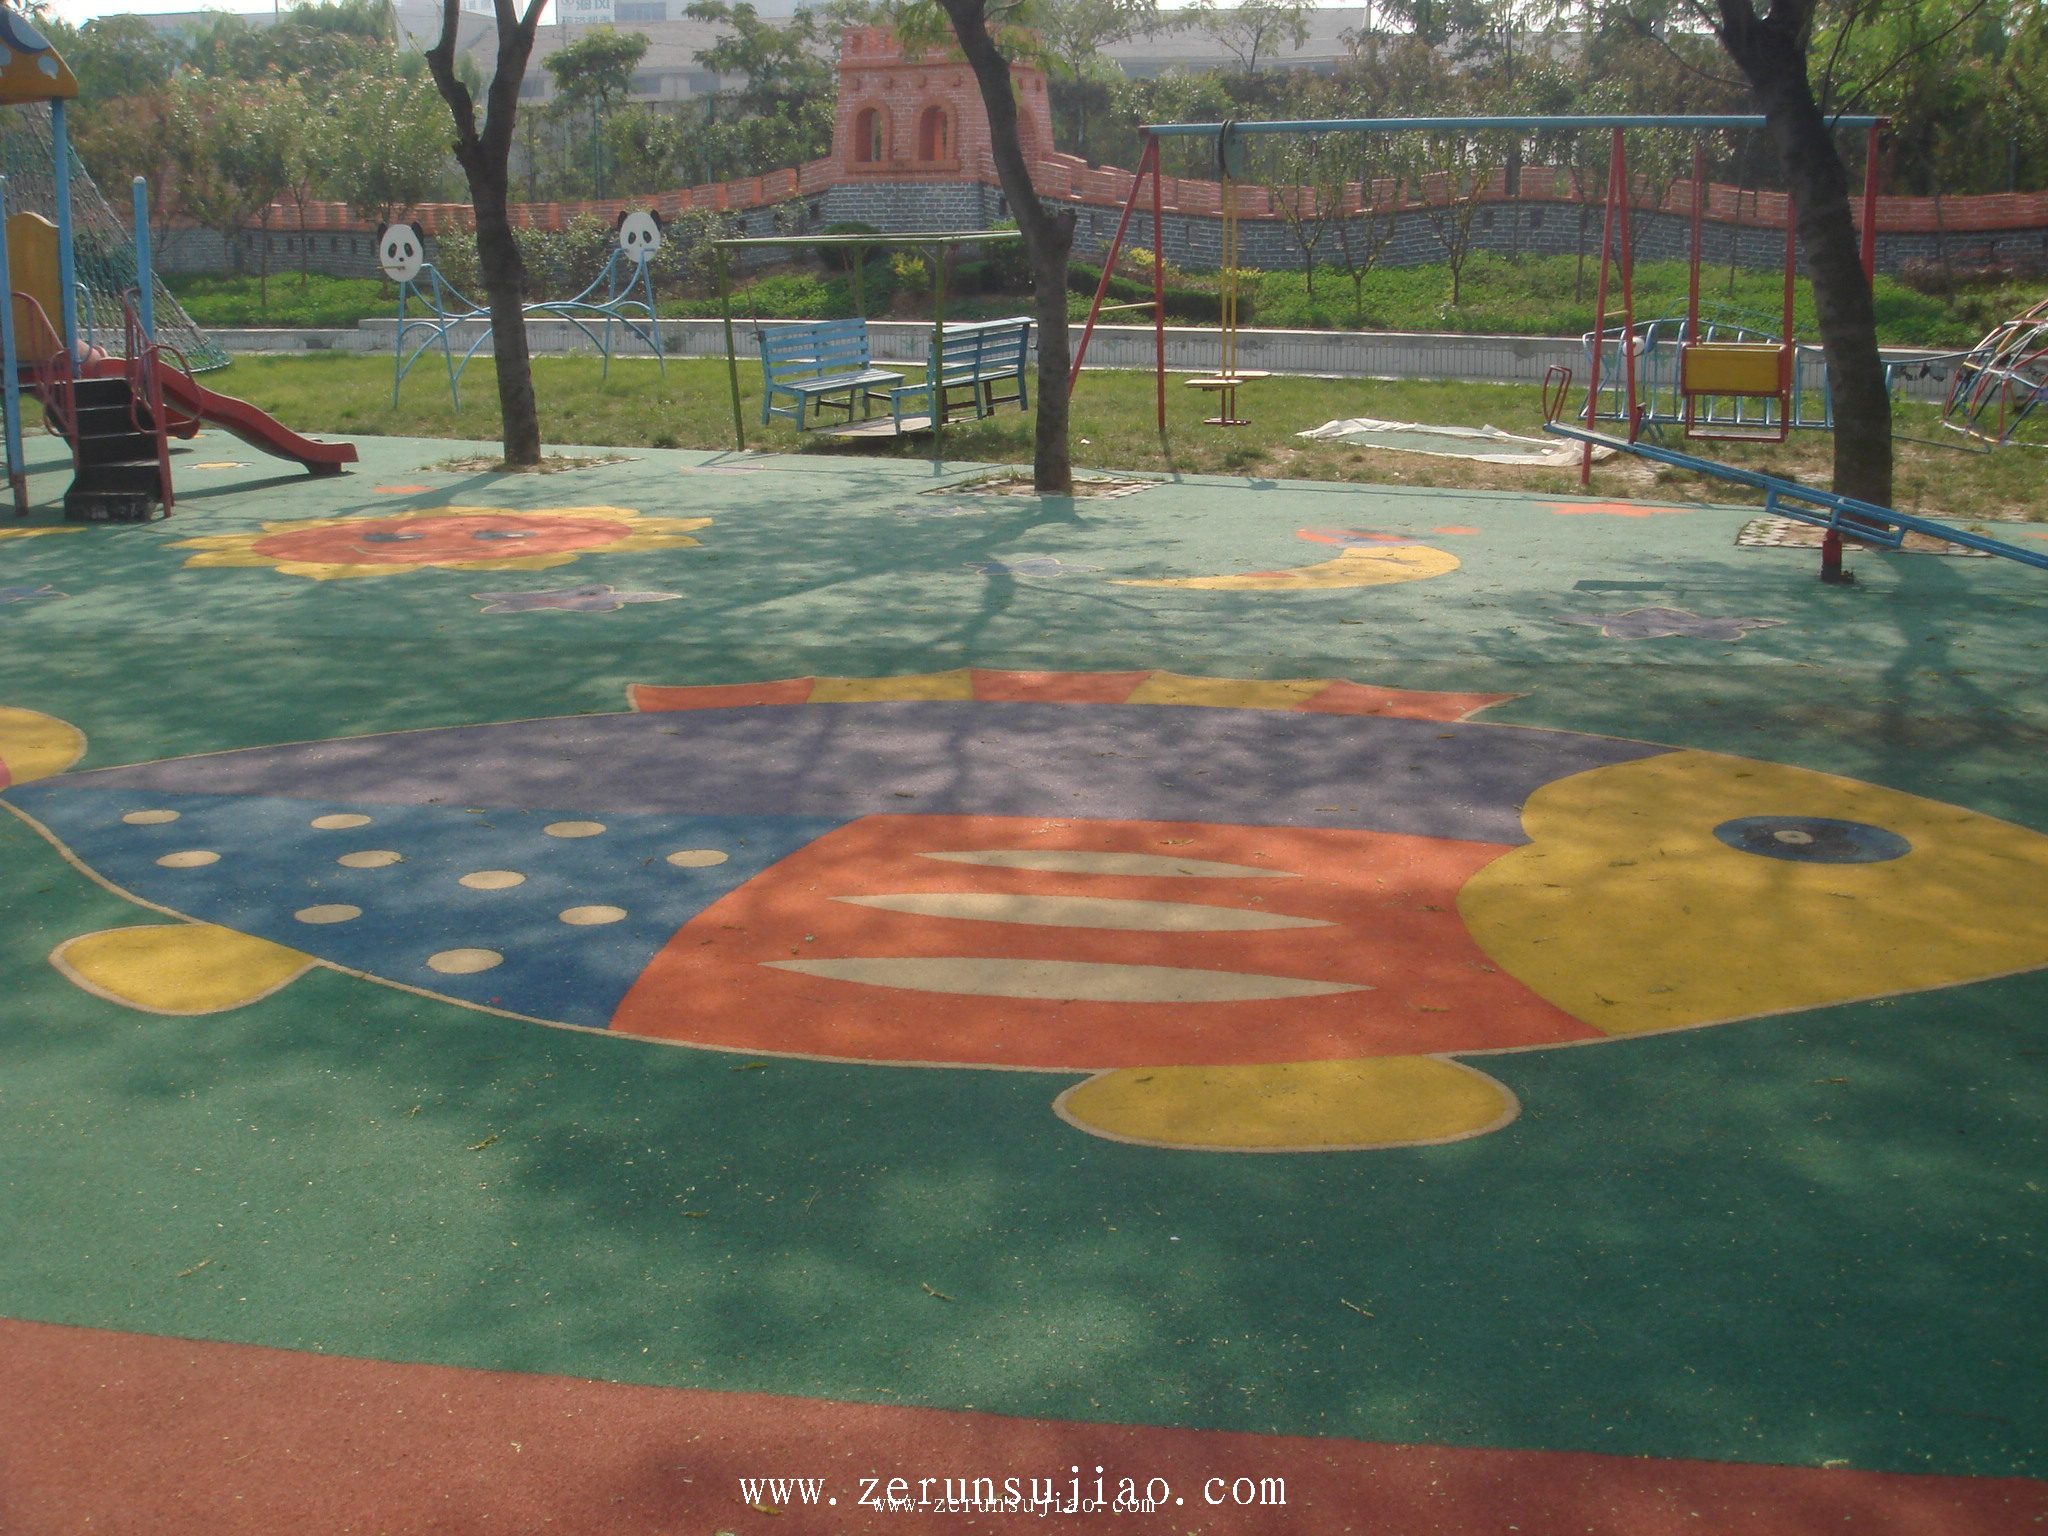 彩色幼儿园塑胶地面、幼儿园地面材料、幼儿园塑胶操场施工